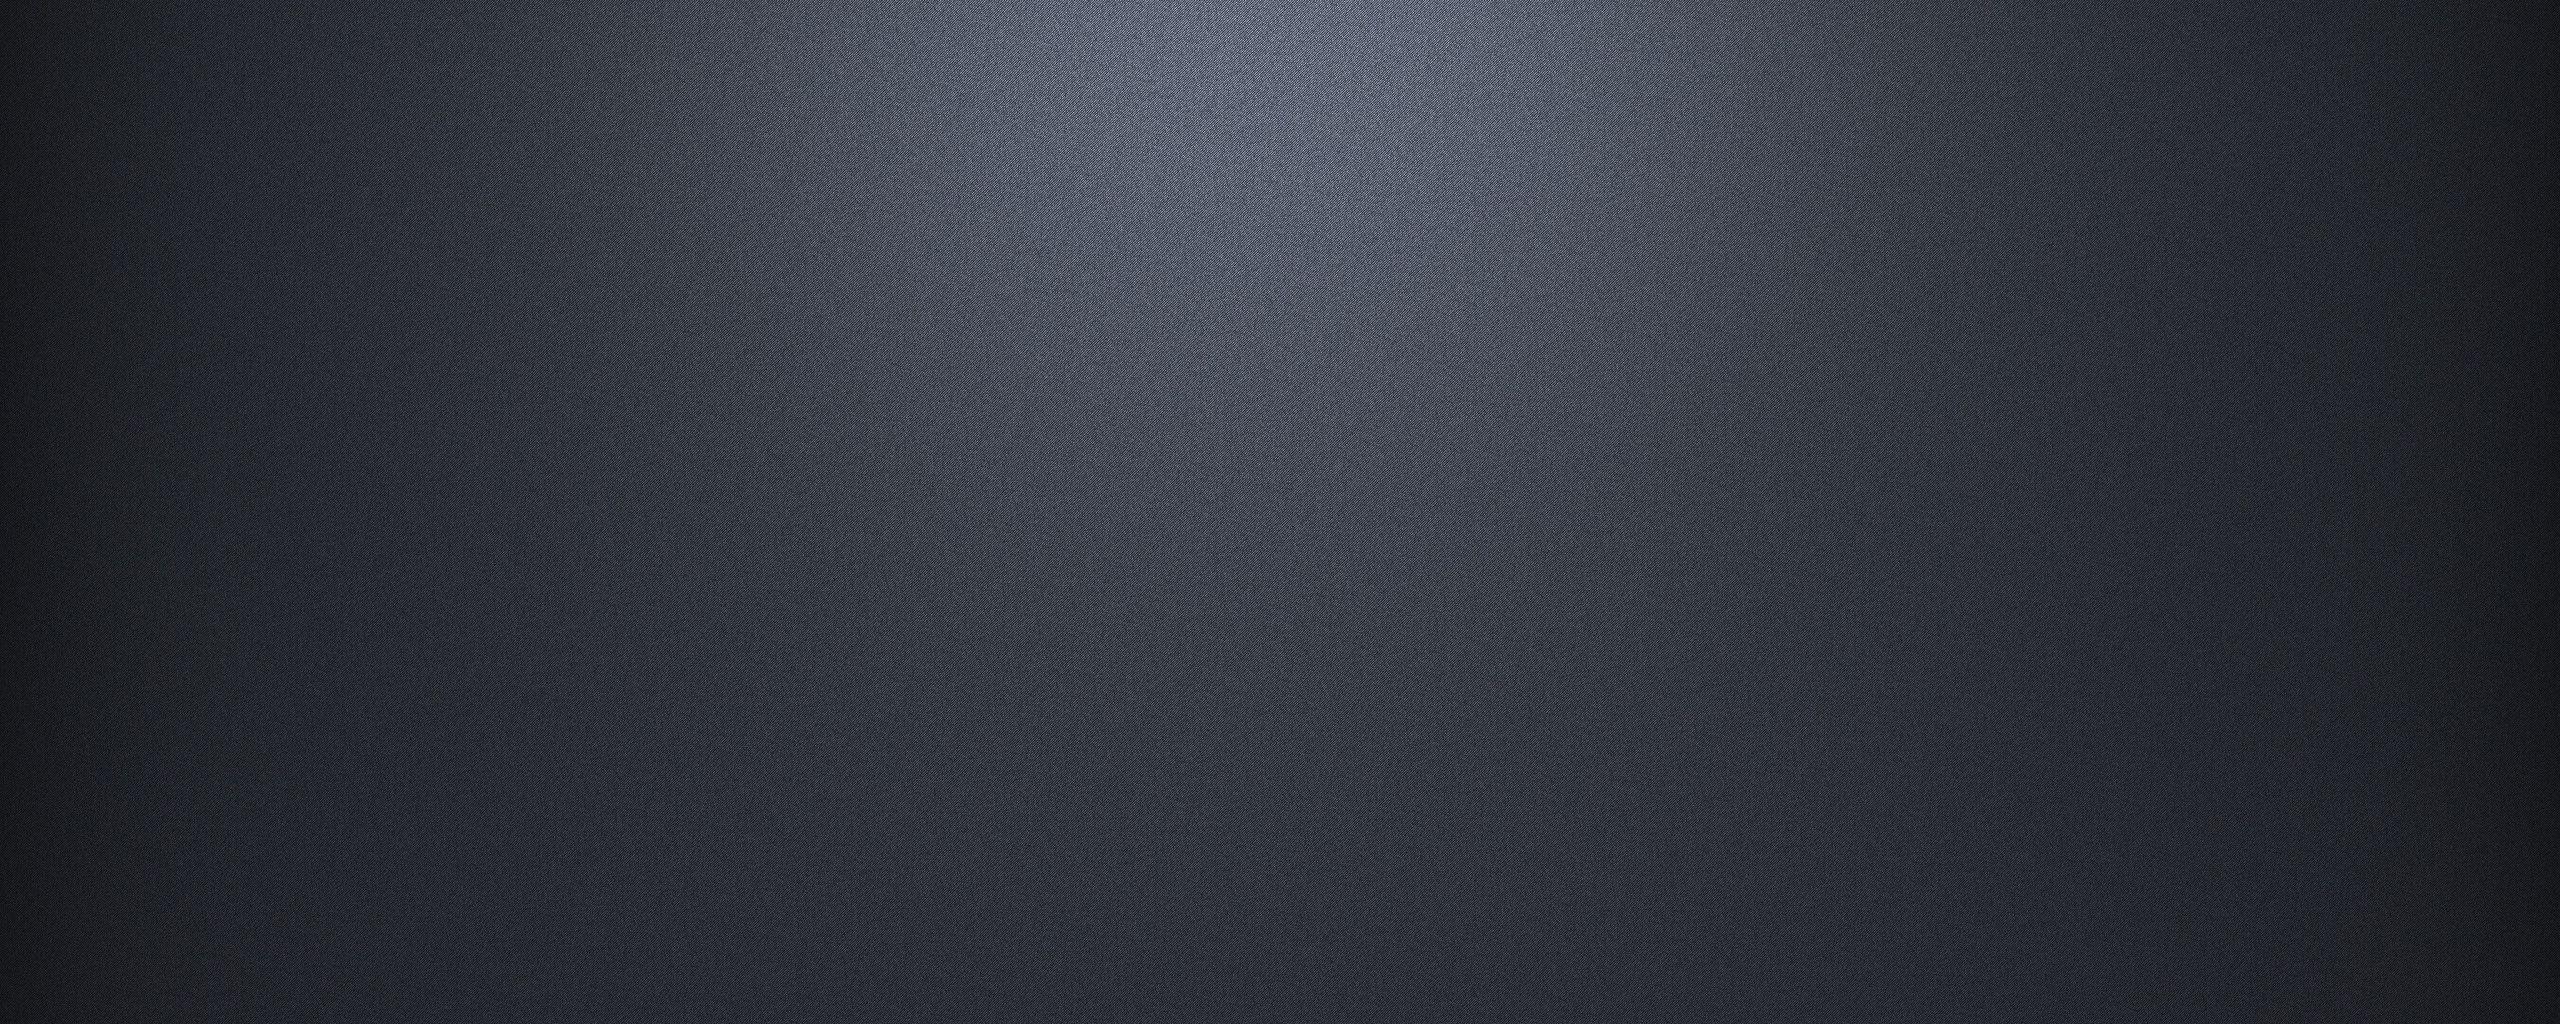 Plain Dark Grey Wallpaper. Top What Kind Of Plain Wallpaper Dark